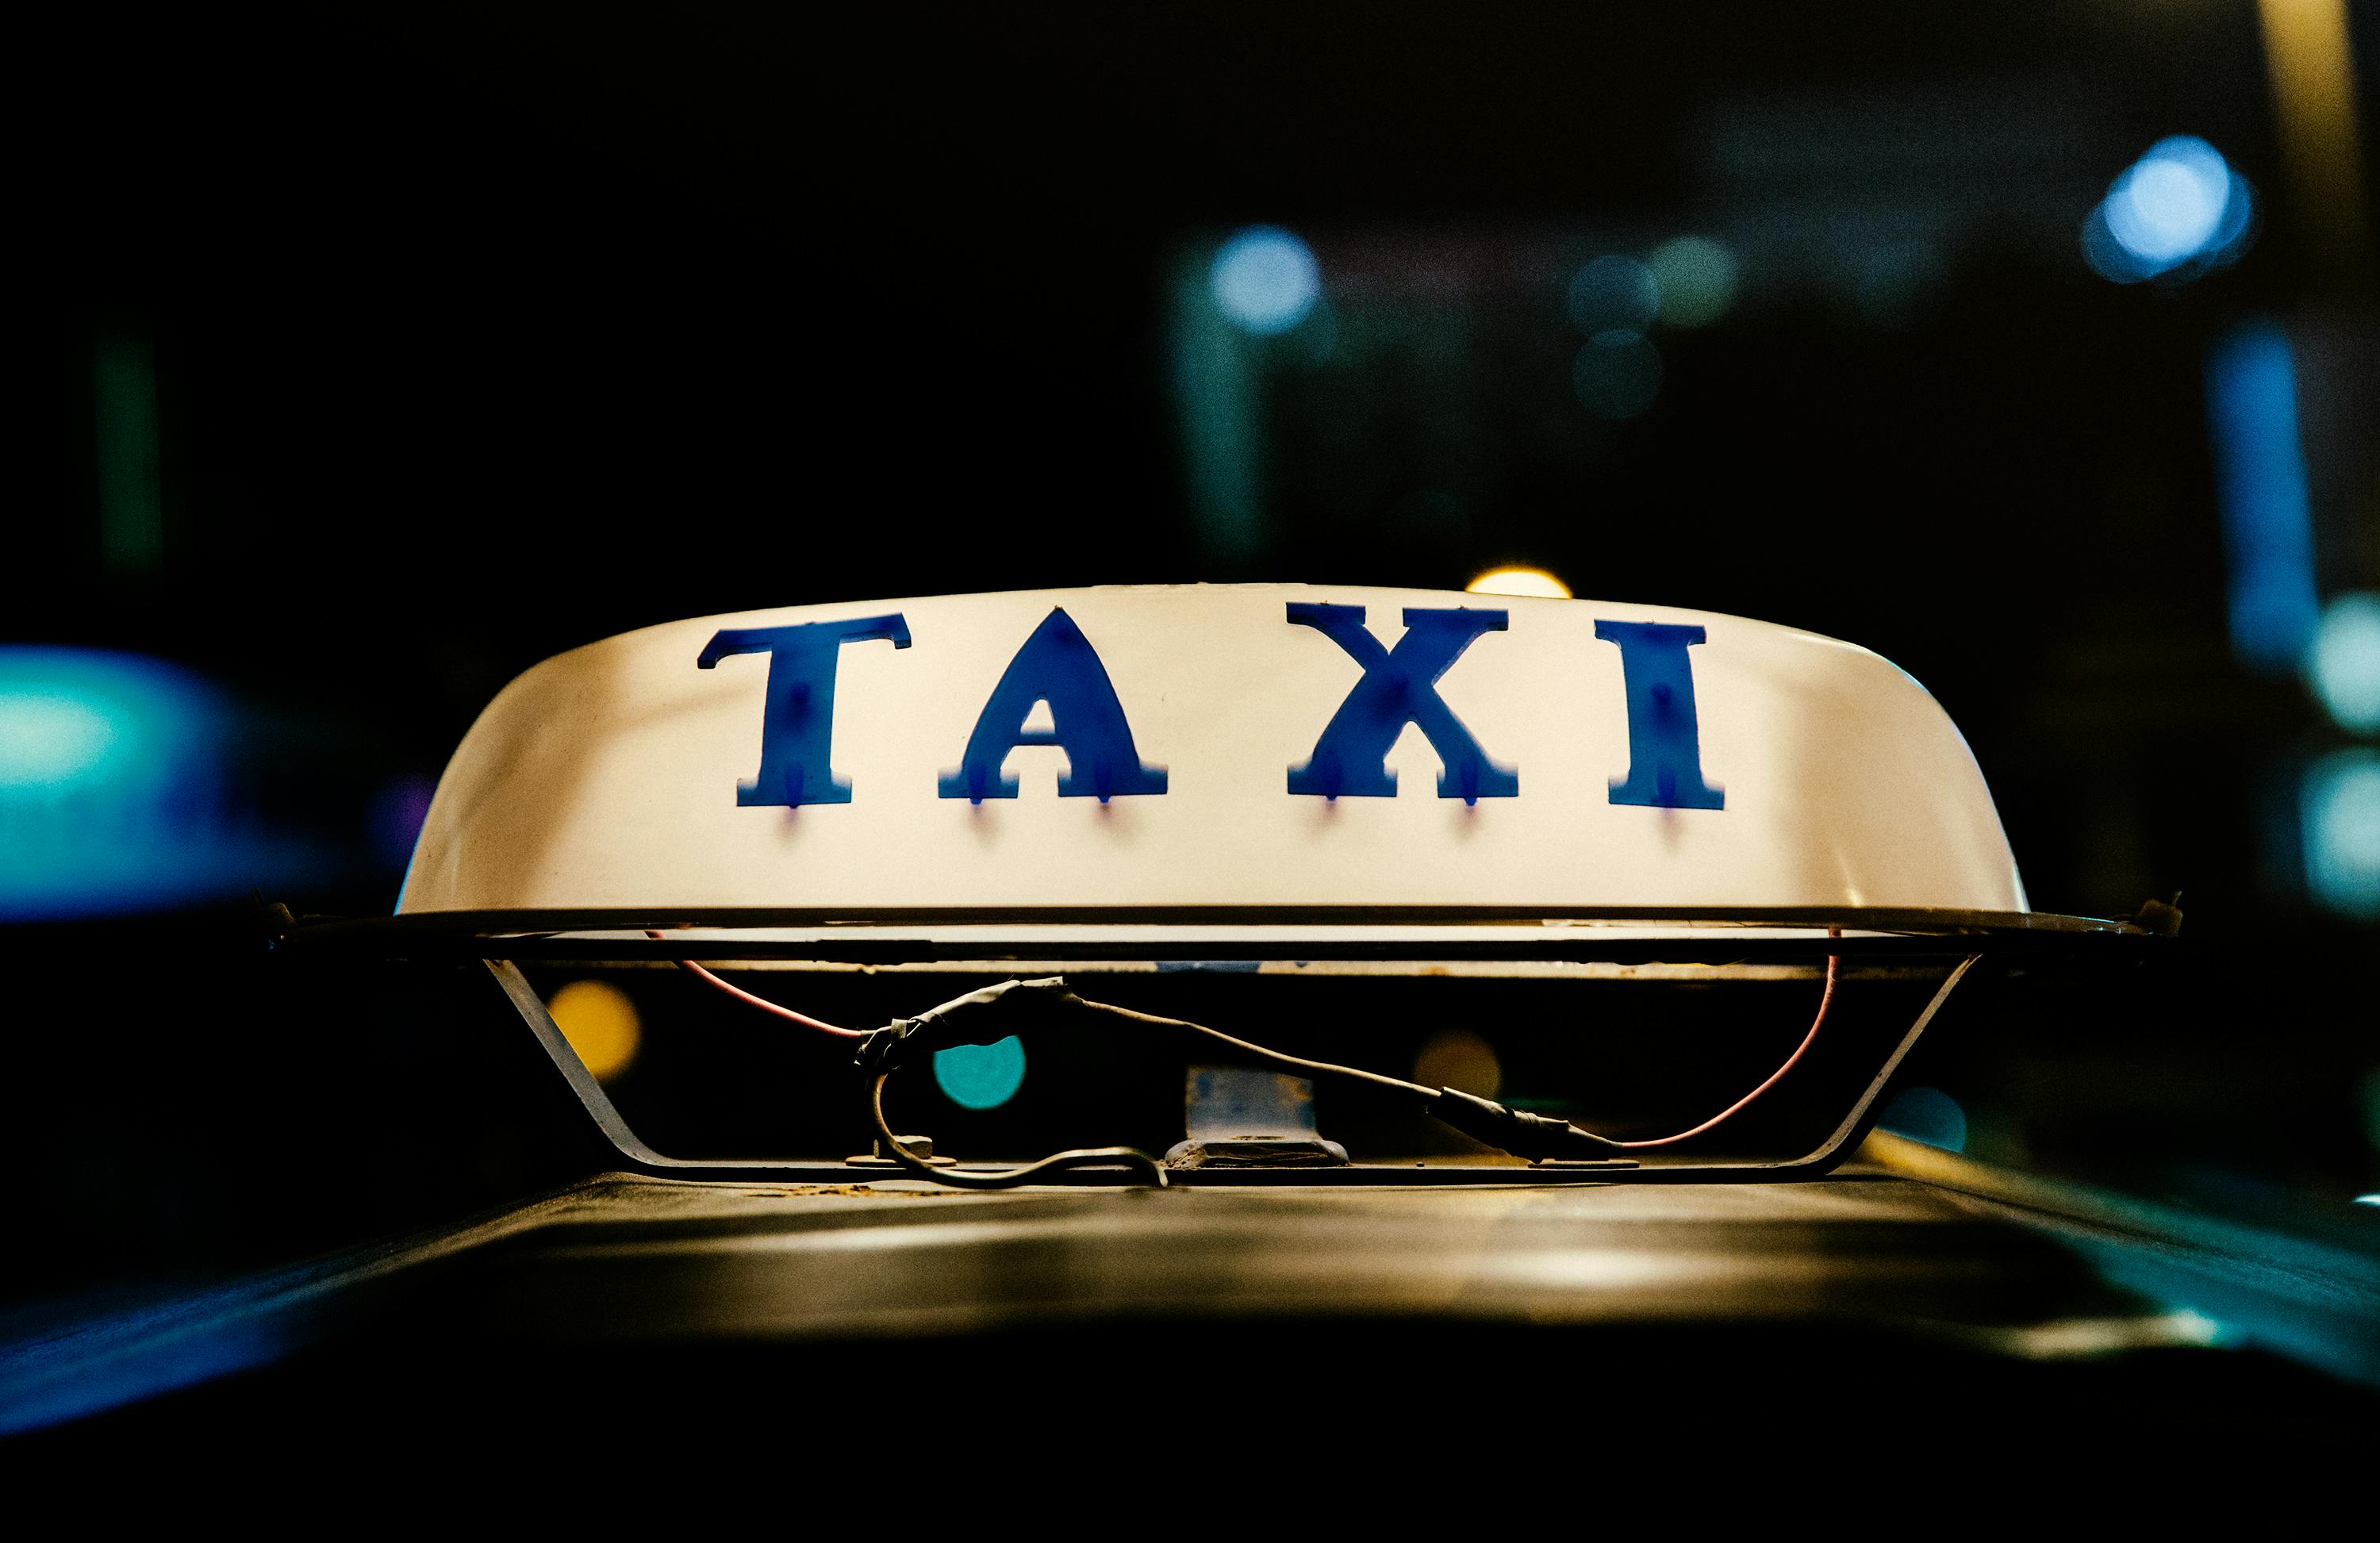 Une lampe de taxi sur le dessus de la voiture | Source : Pexels